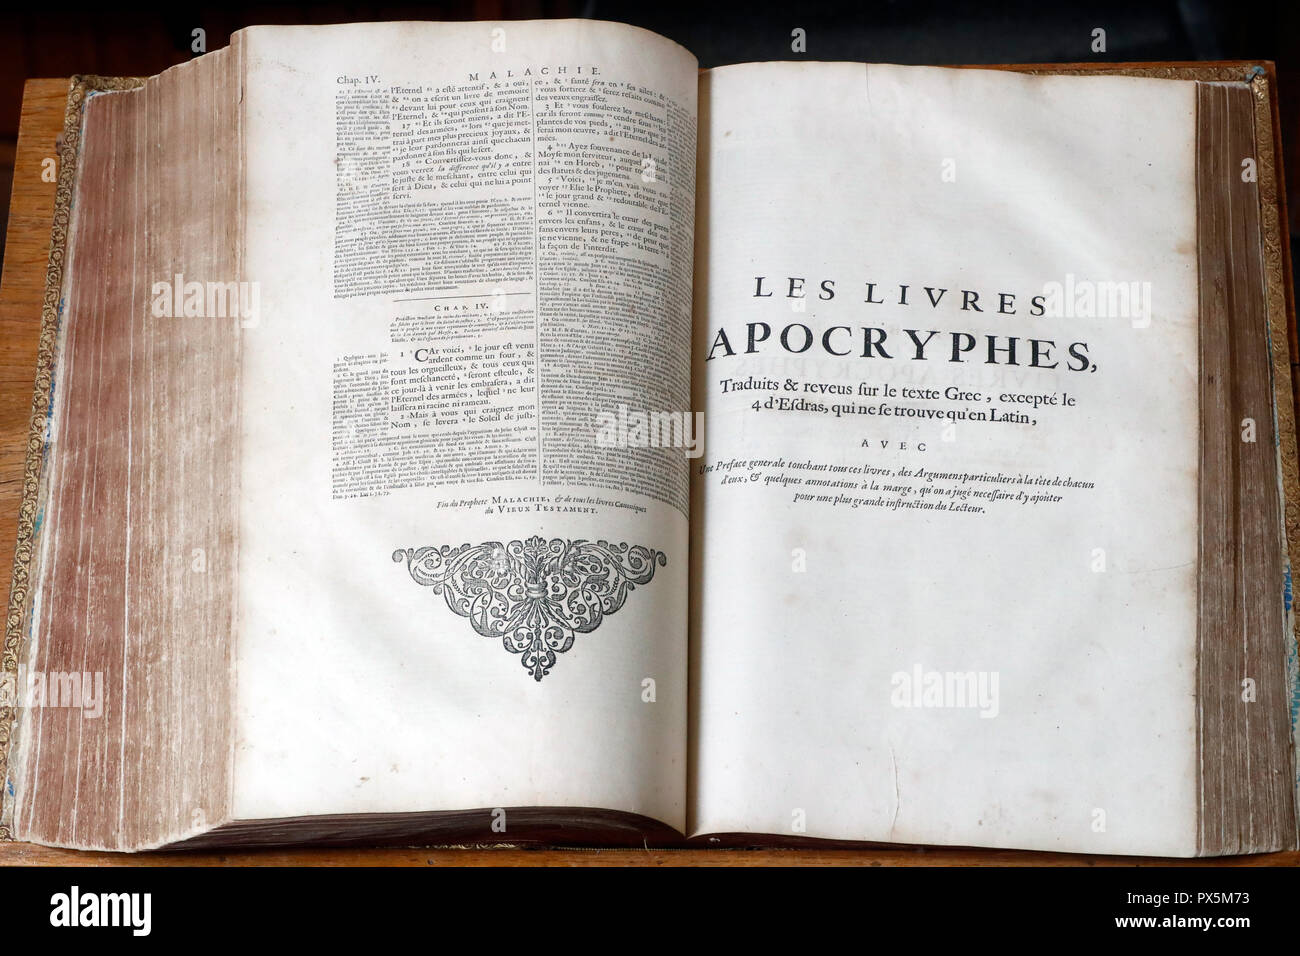 Alte Bibel in französischer Sprache, 1669. Alten Testament. Apokryphen. Stockfoto